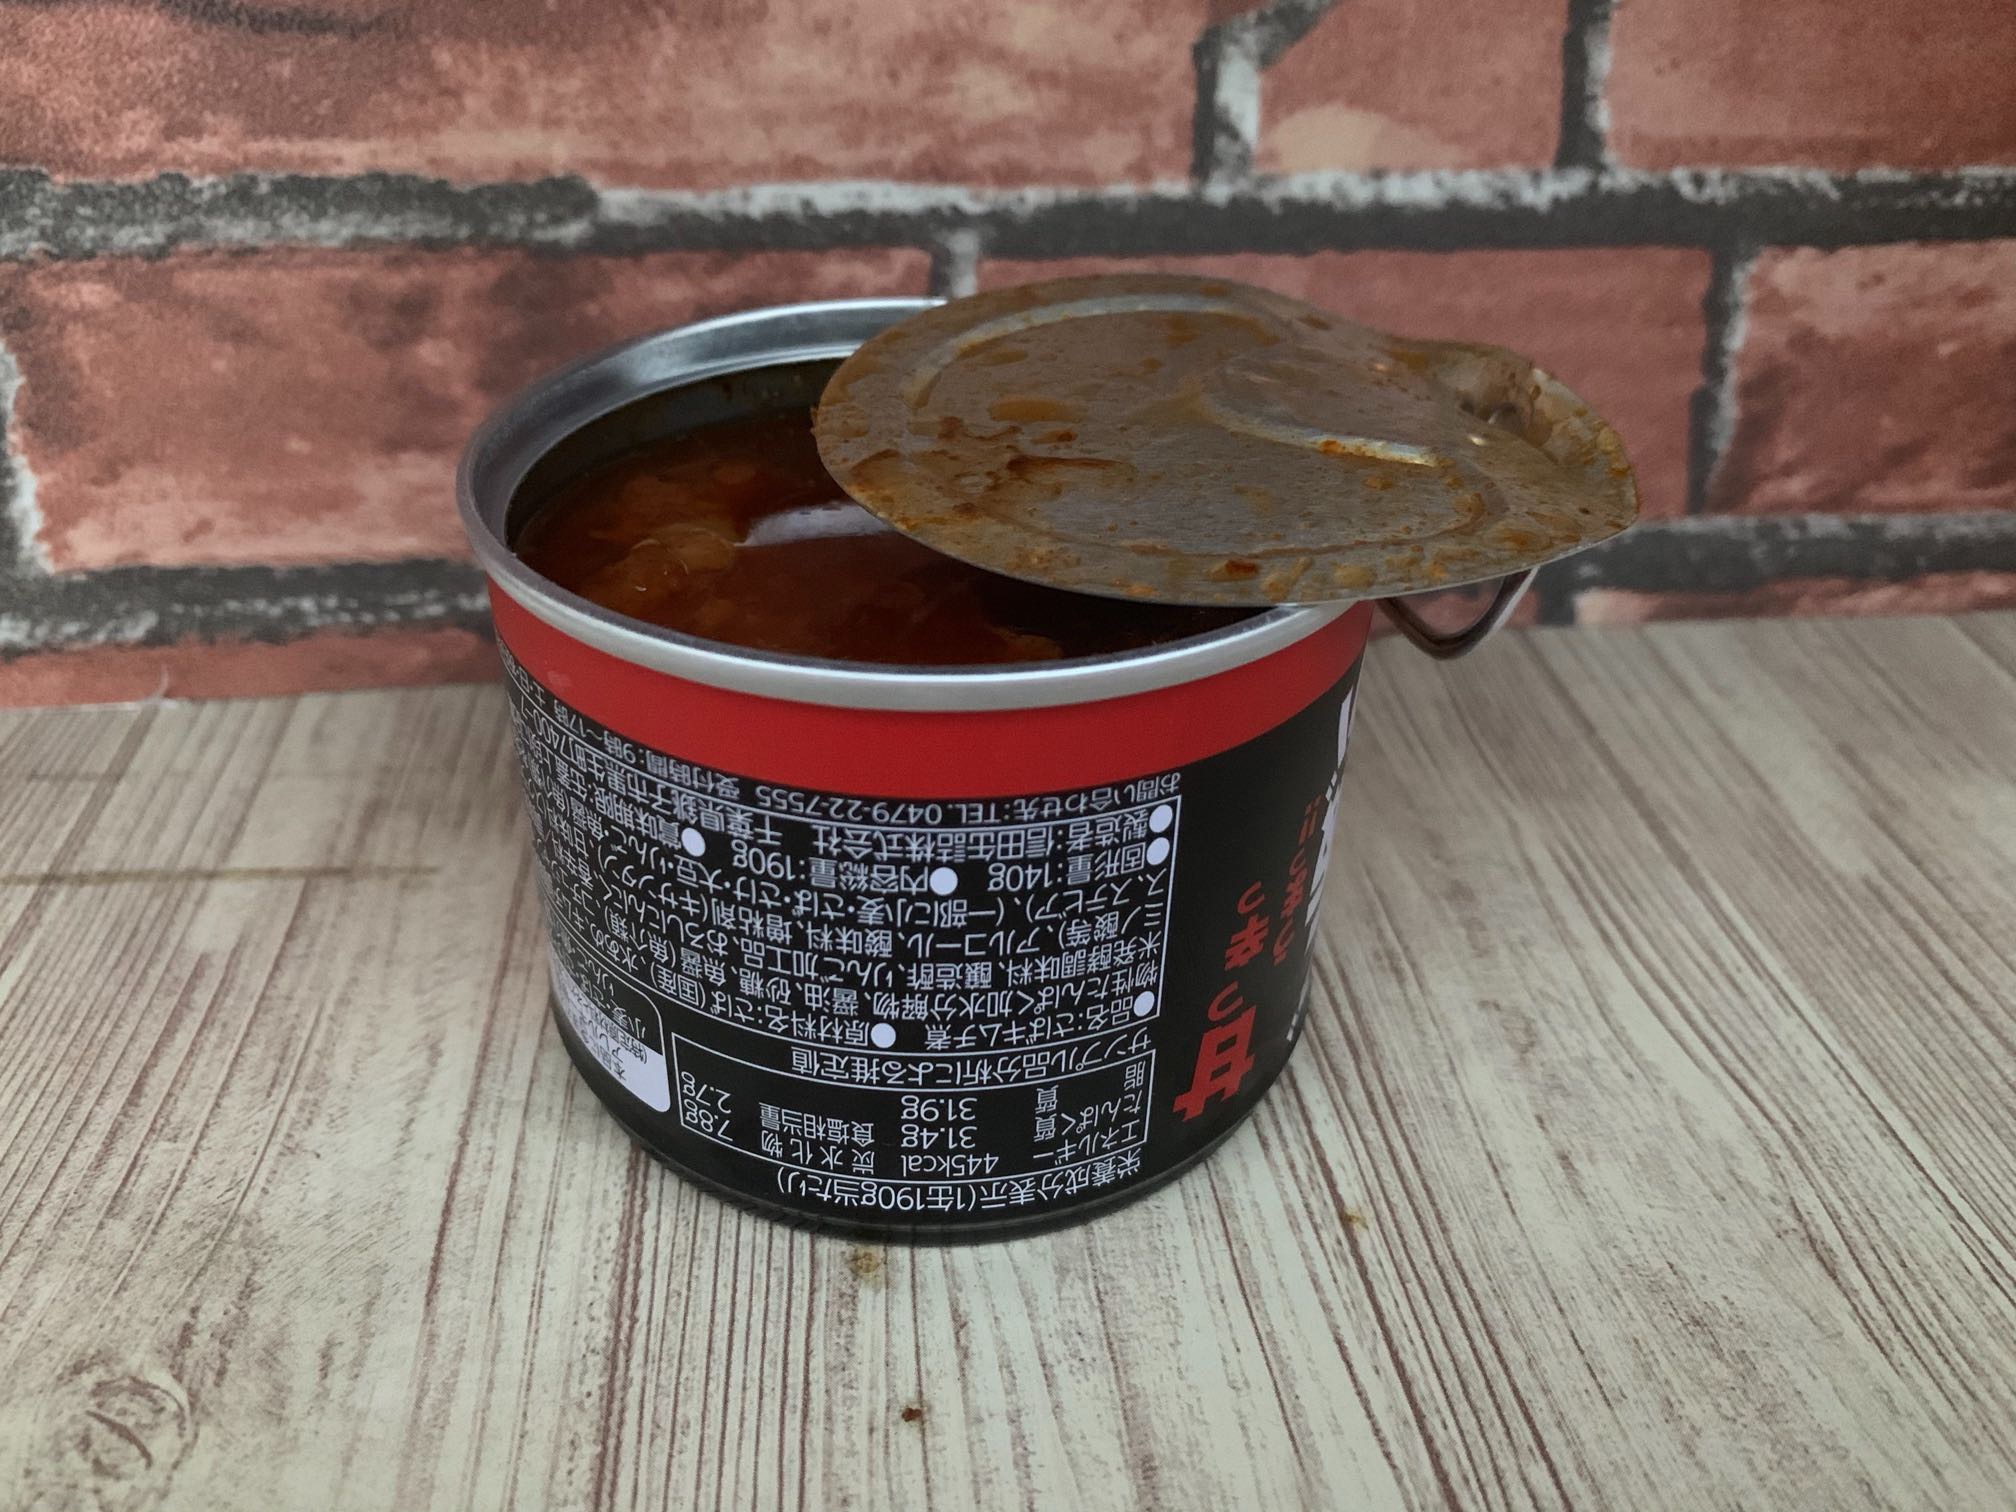 信田缶詰の新缶「ご飯がススムさばのキムチ煮」を食レポしてみた。【5つ星評価、味】